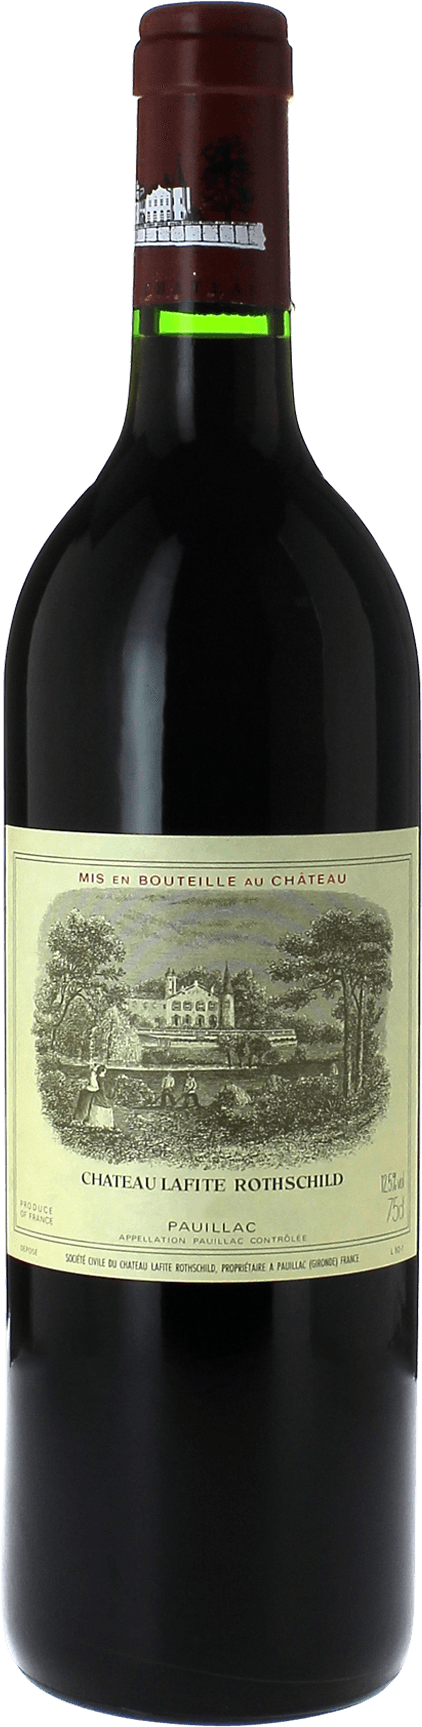 Lafite rothschild 1995 1er Grand cru class Pauillac, Bordeaux rouge